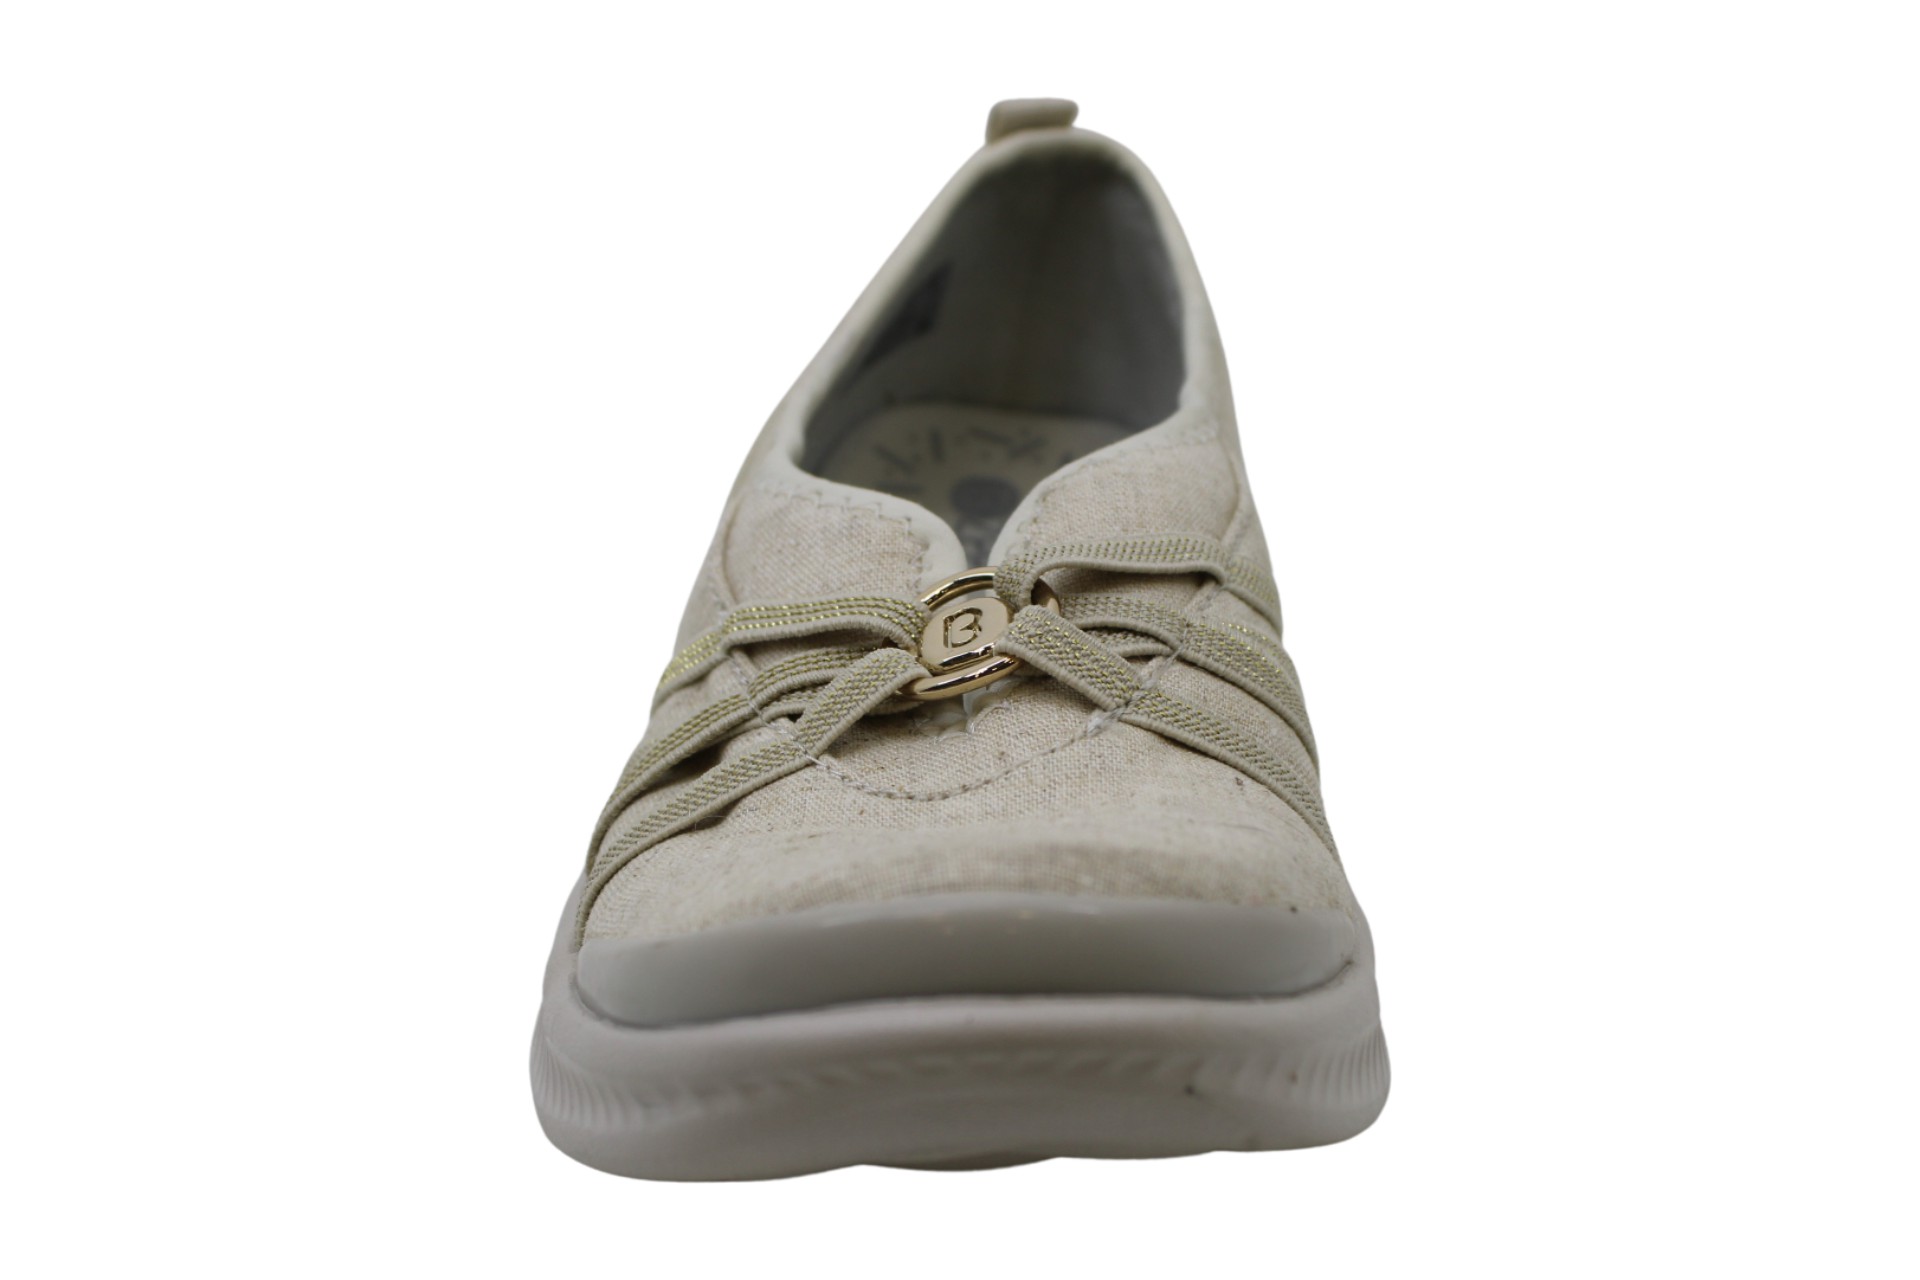 BZees Women's Shoes Fashion Sneakers ZTK, Beige, Size 9.0 CyPb | eBay